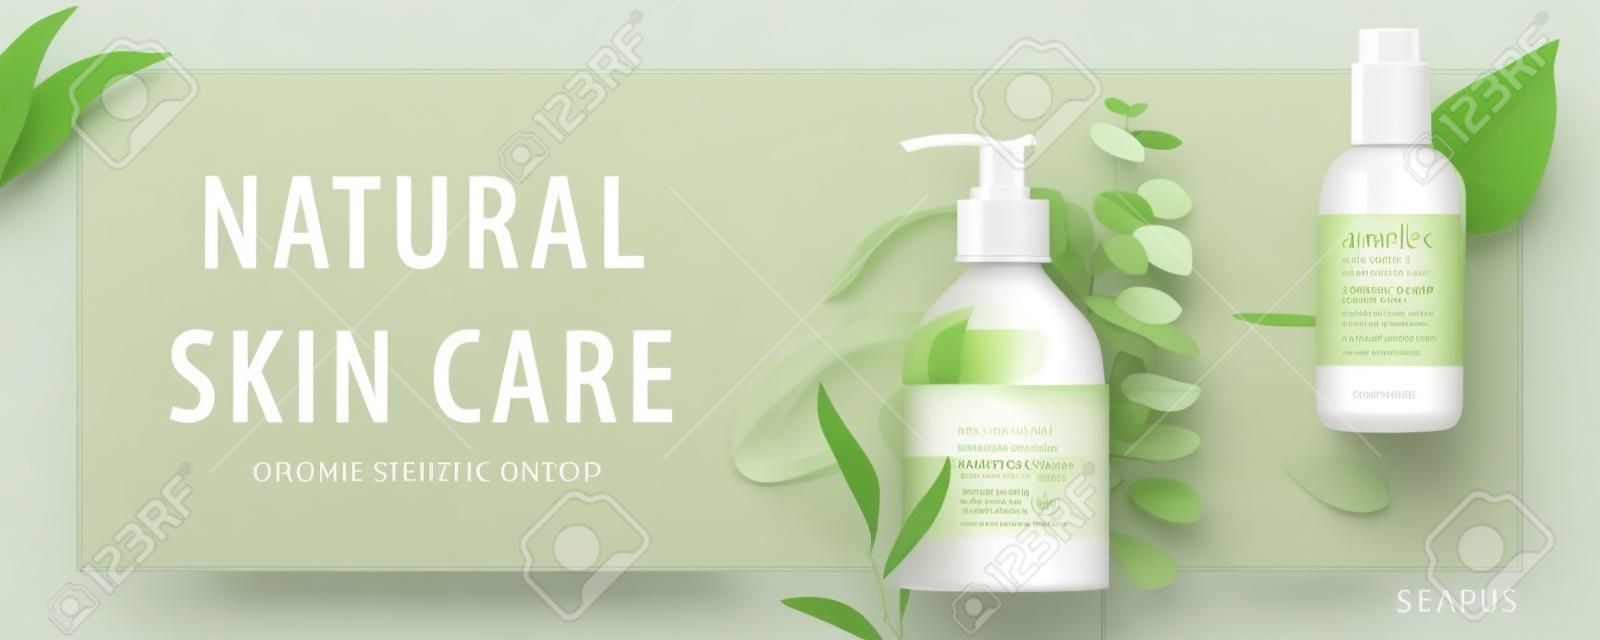 Ad banner voor eenvoudige schoonheidsproducten, mock-ups versierd met natuurlijke bladeren en crèmestreken, concept van biologische huidverzorging, 3d illustratie